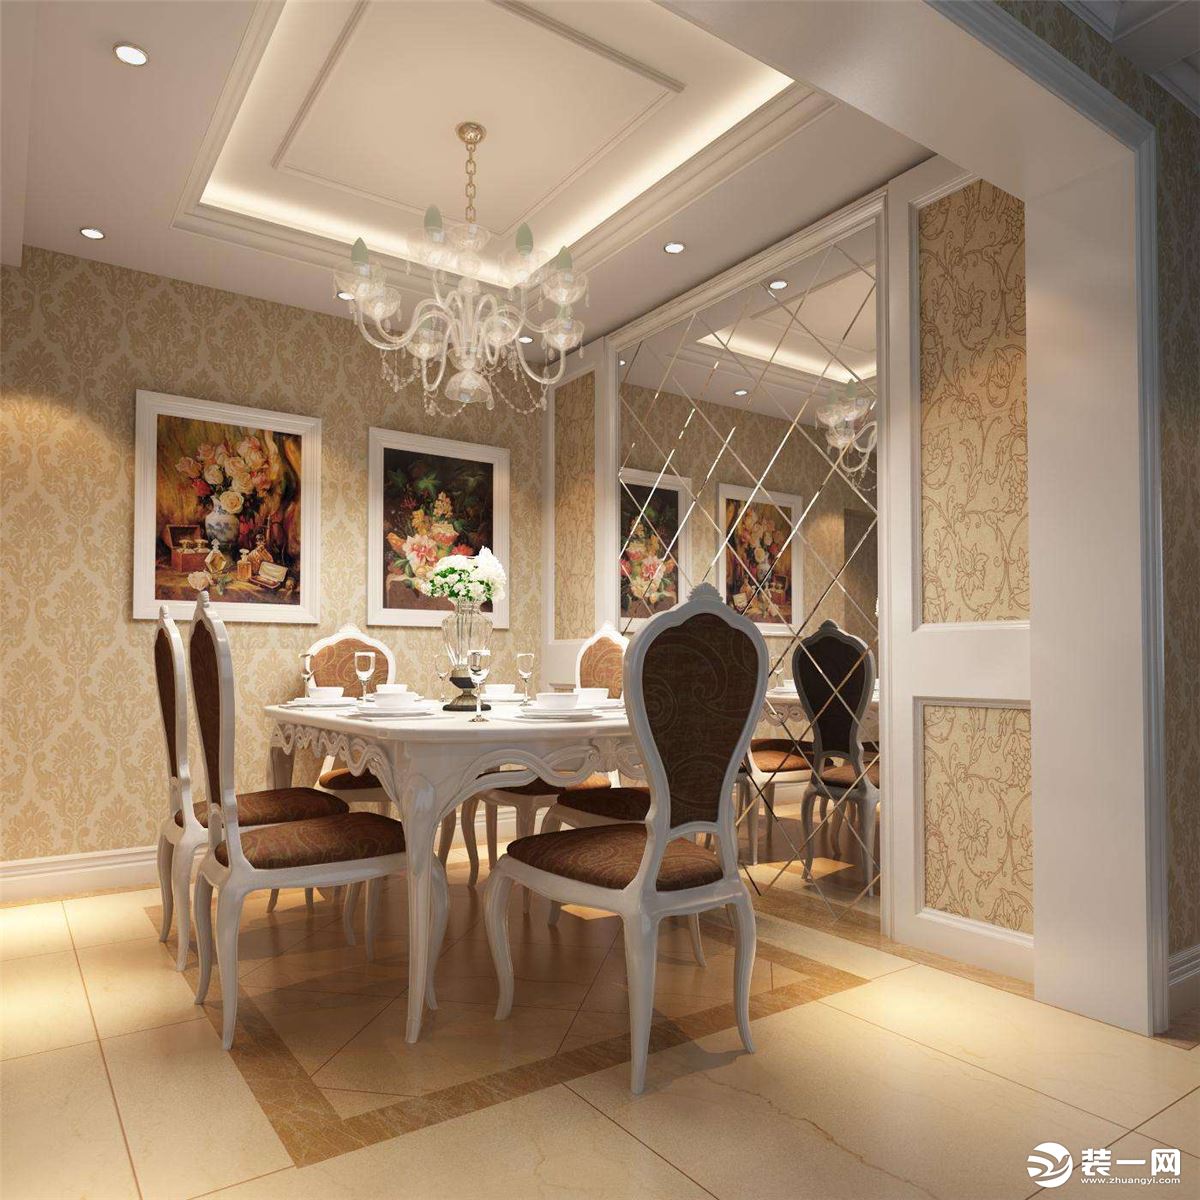 简约新古典餐厅黑白镜子背景墙装修效果图 – 设计本装修效果图